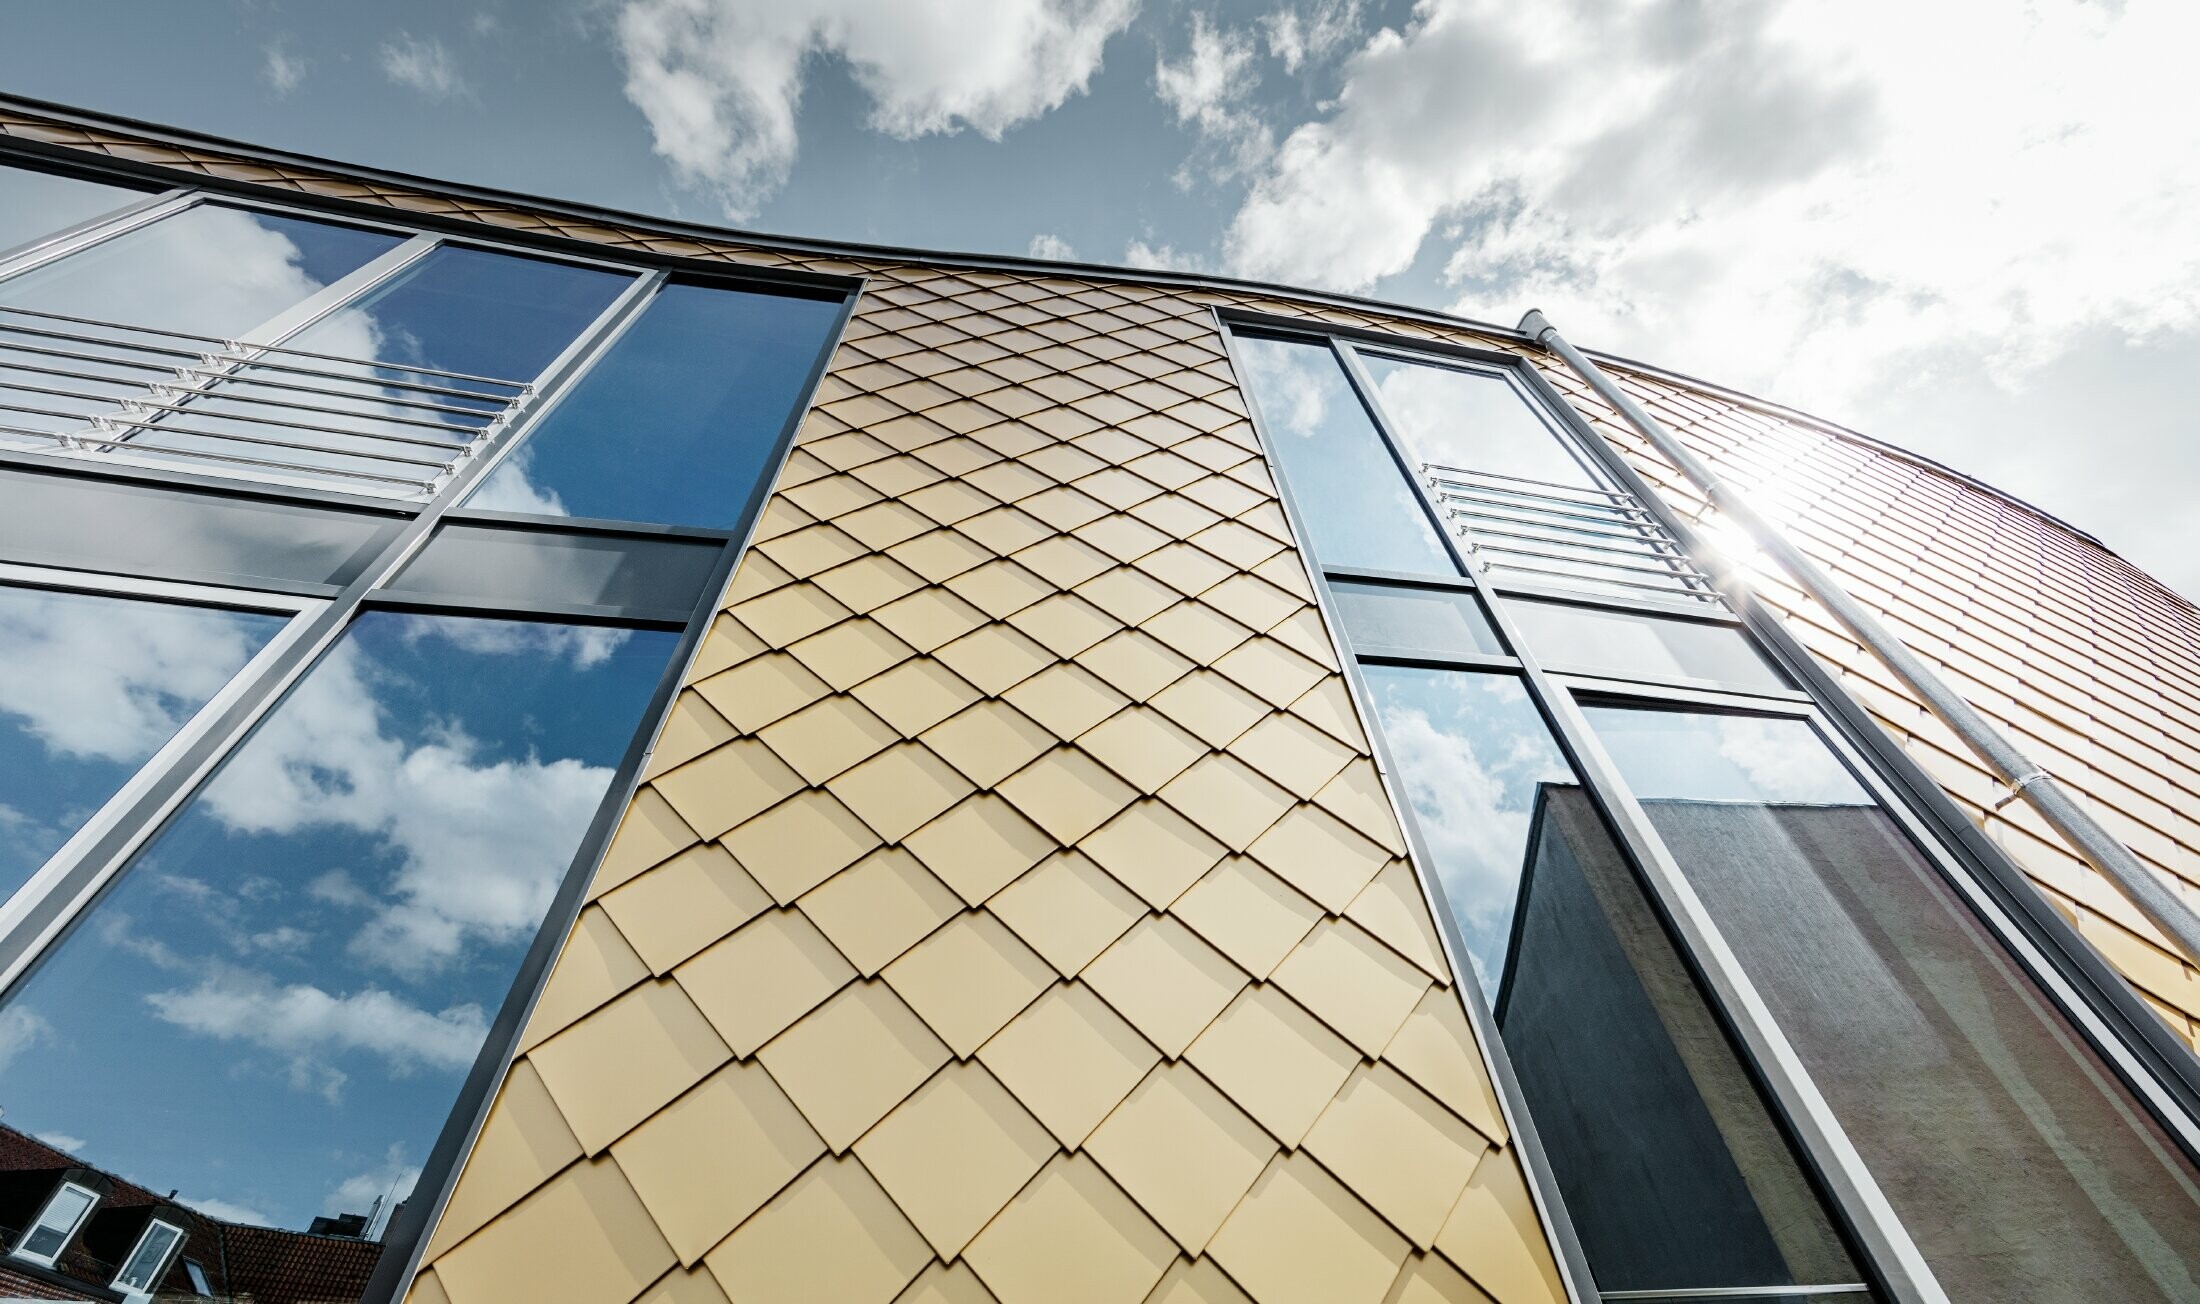 Gyllene aluminiumromber från PREFA i mayaguld, stora glaspartier på byggnadens fasad.